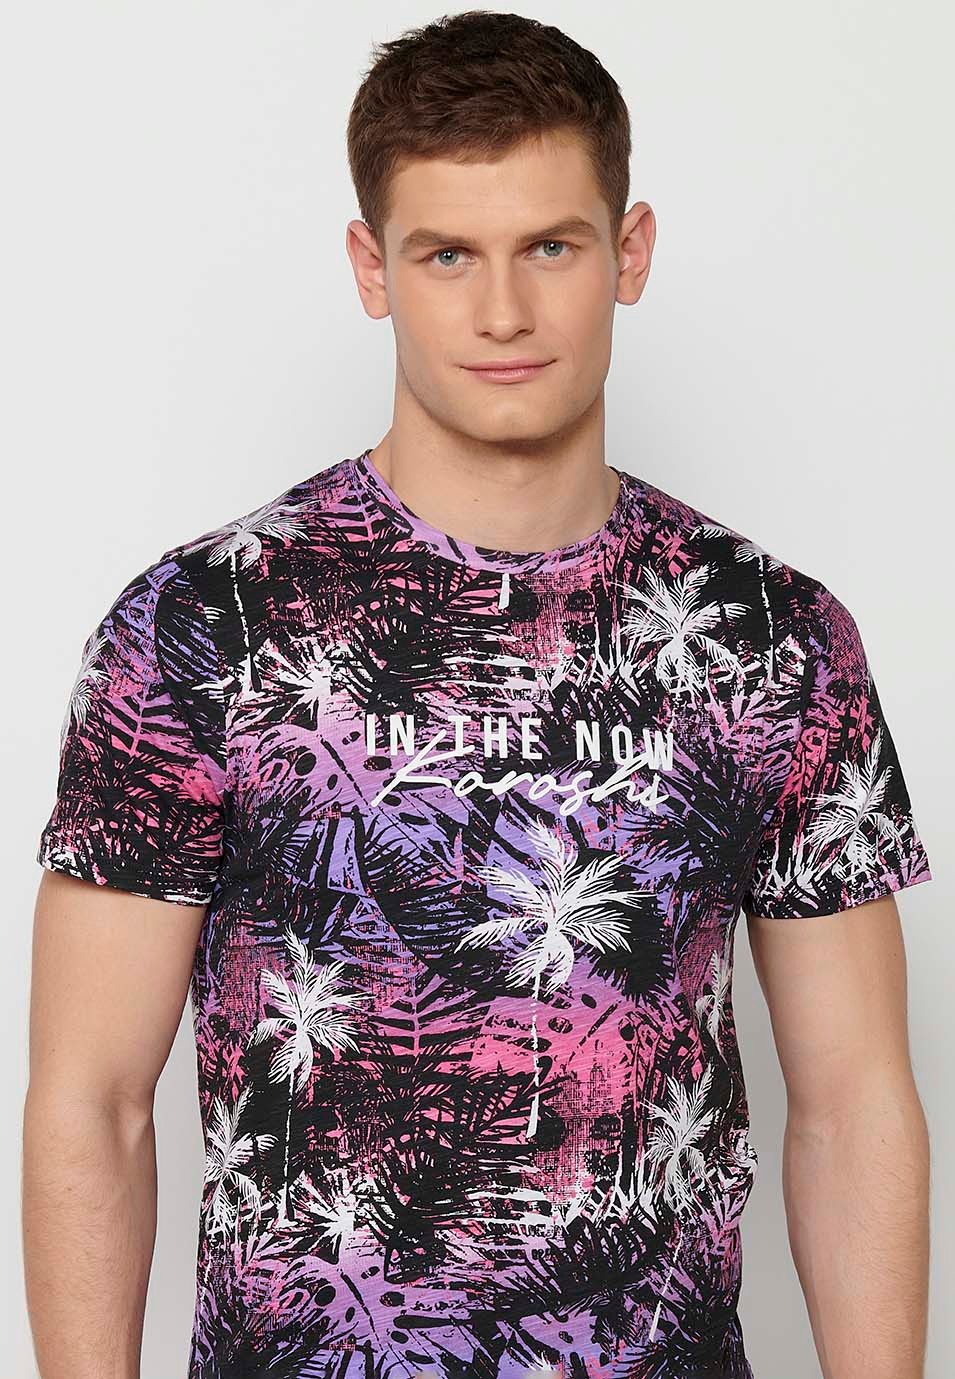 Camiseta manga corta de algodon con estampado tropical multicolor rosa morado para hombre